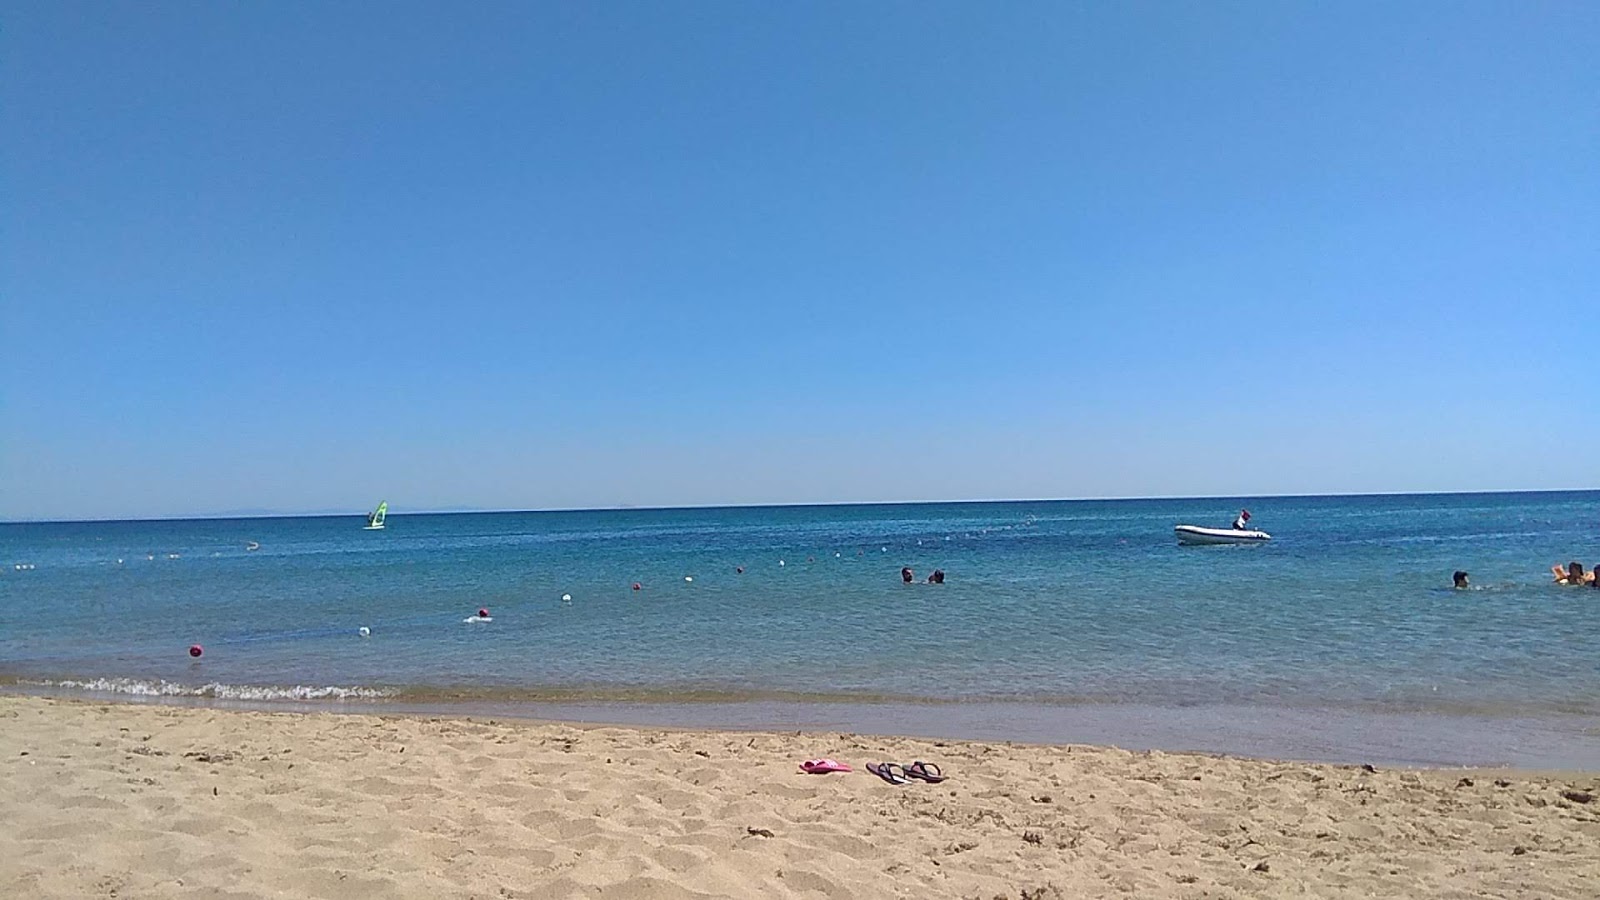 艾丁奇克海滩的照片 带有蓝色纯水表面